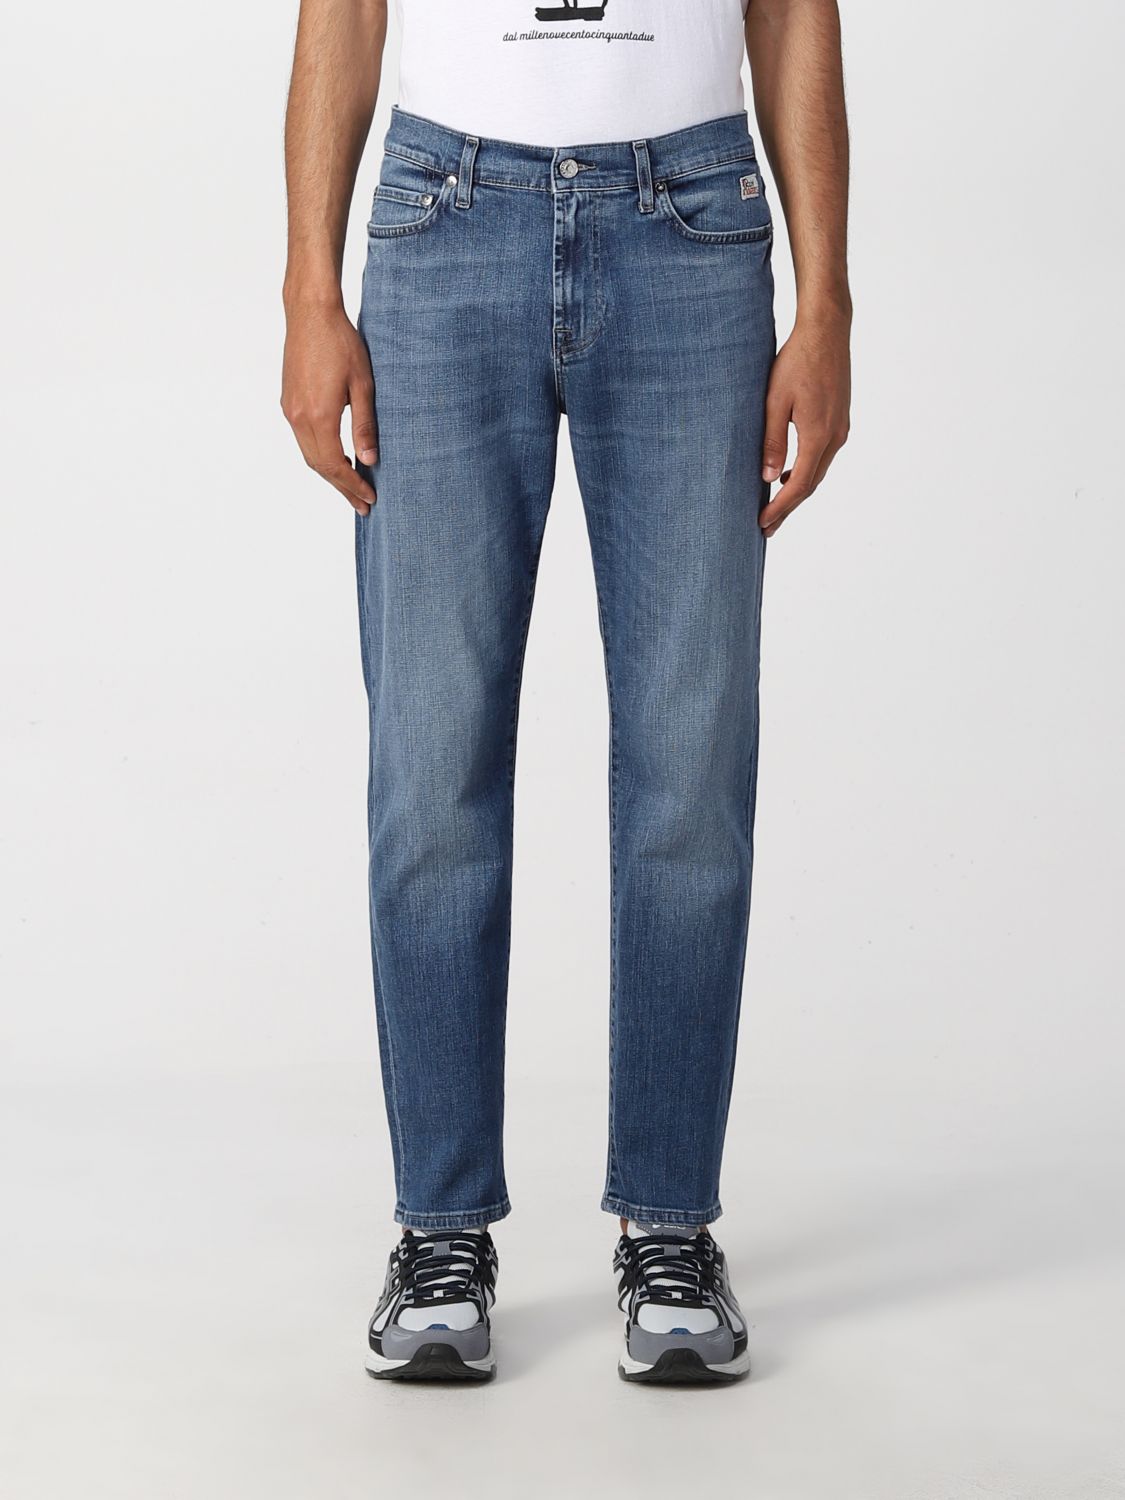 ROY ROGERS: Pants men - Denim | Roy Rogers jeans RRU108D0210475 online ...